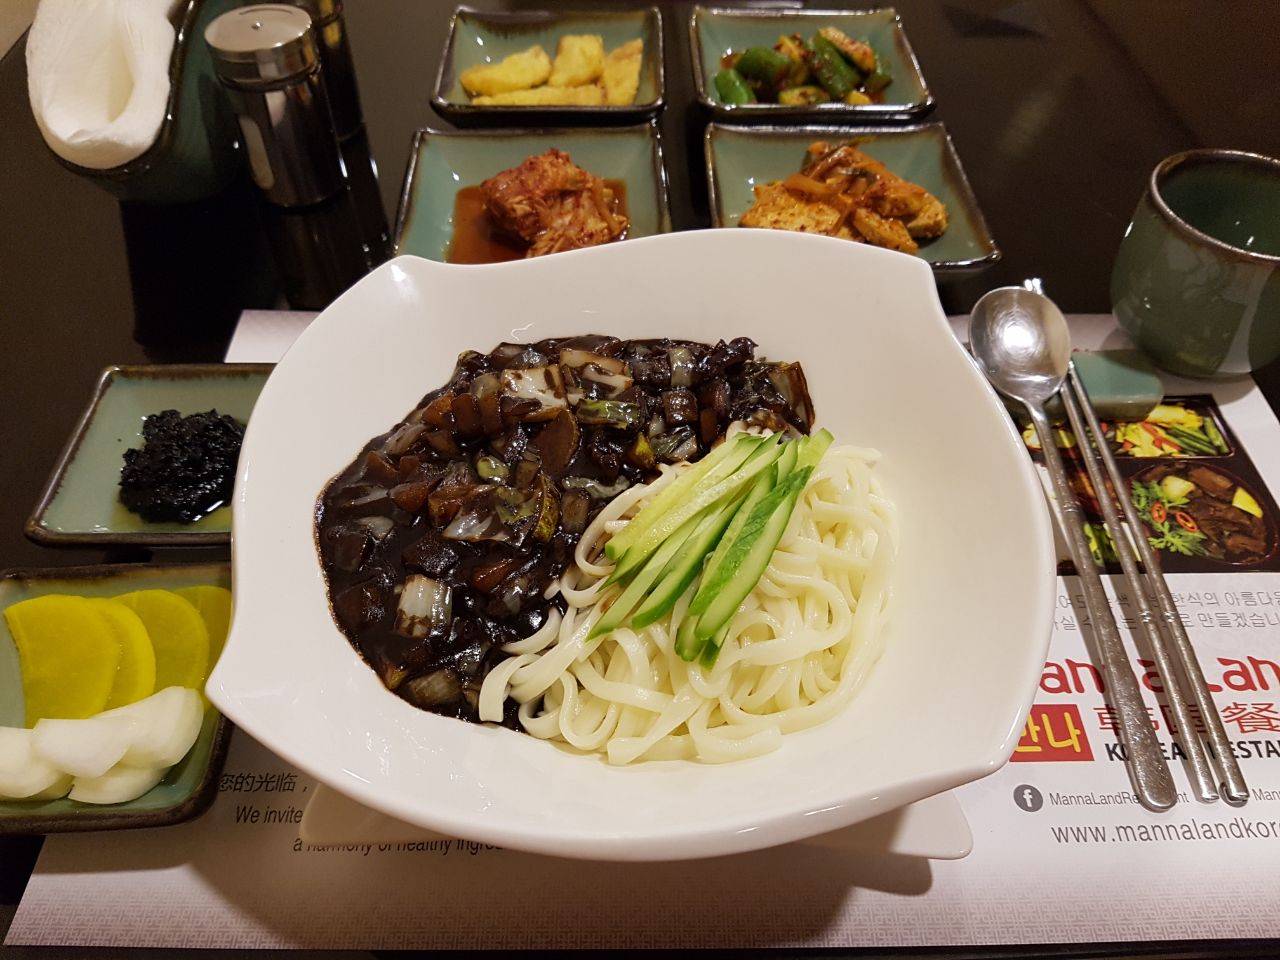 The Korean Restaurant